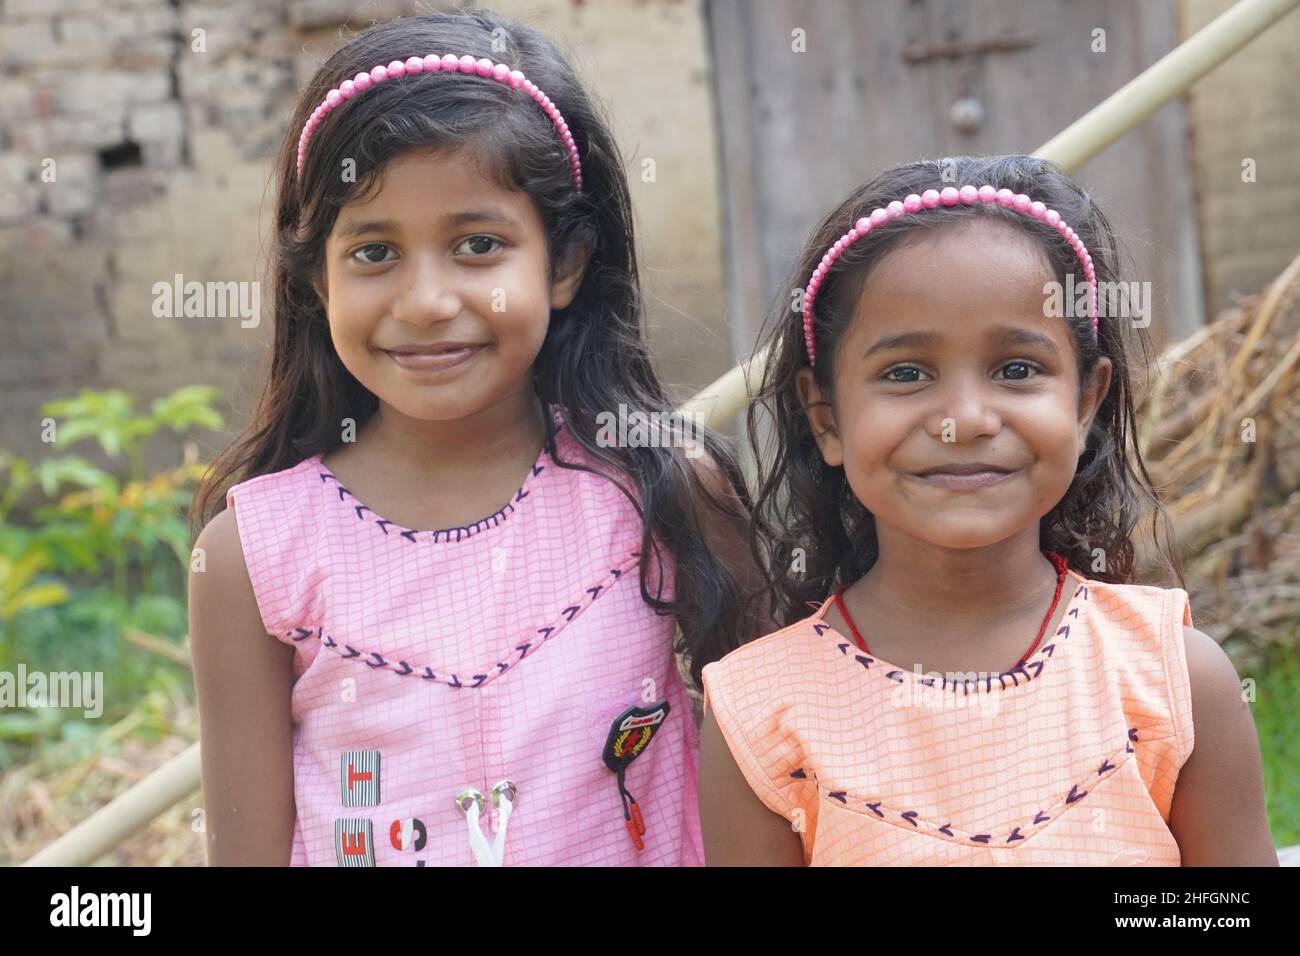 petite sœur indienne mignonne avec un joli sourire sur le visage Banque D'Images